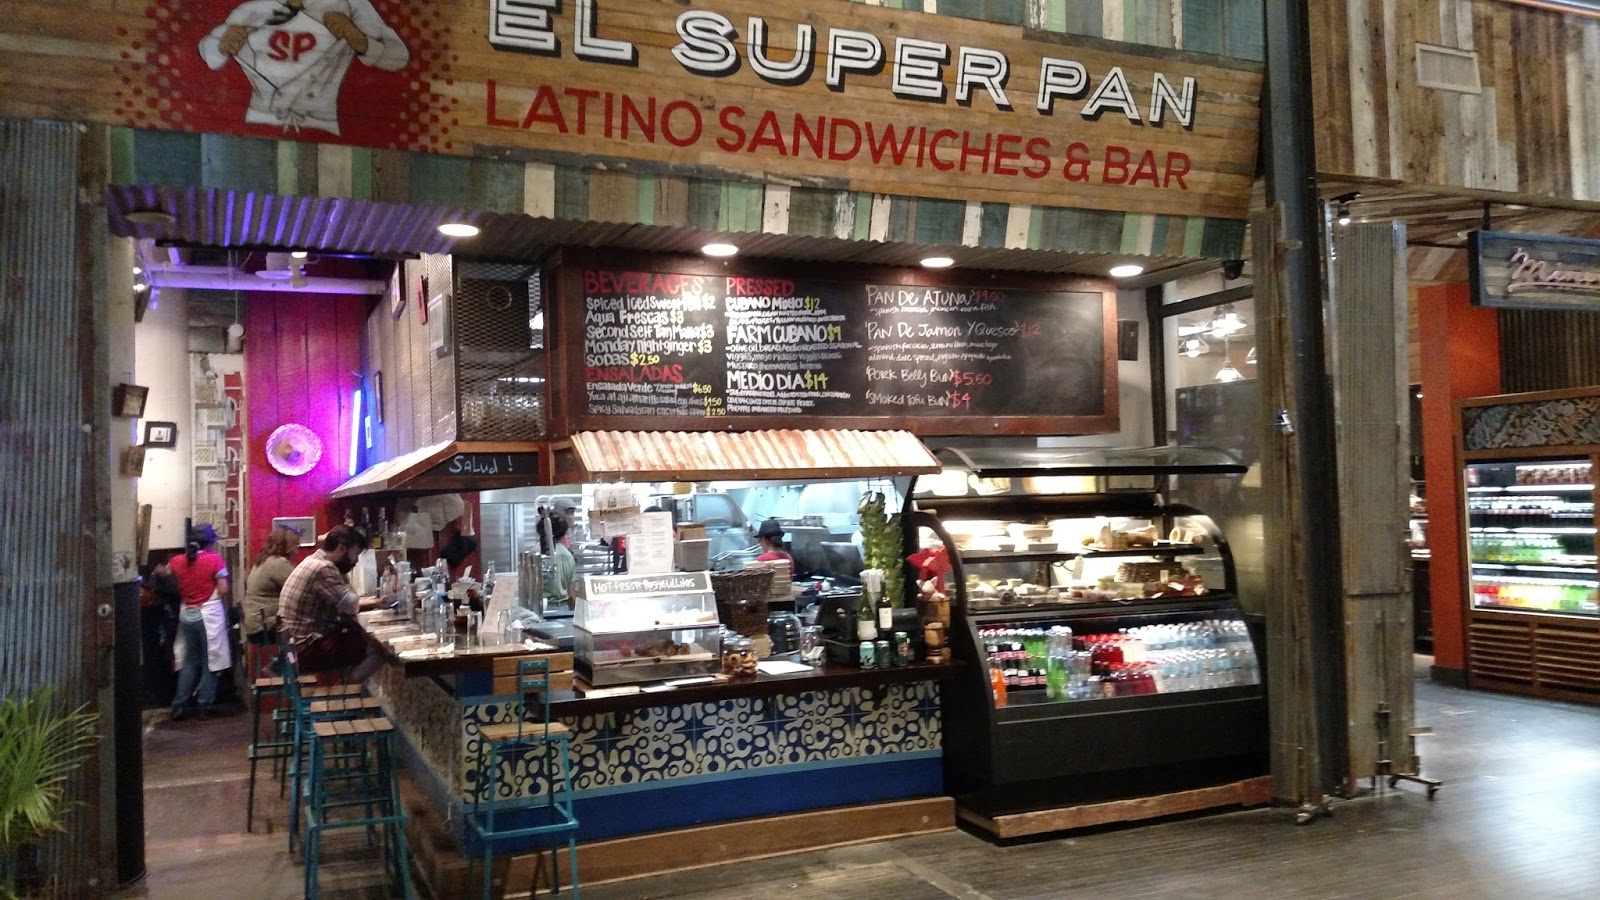 el super pan latino kitchen and bar menu